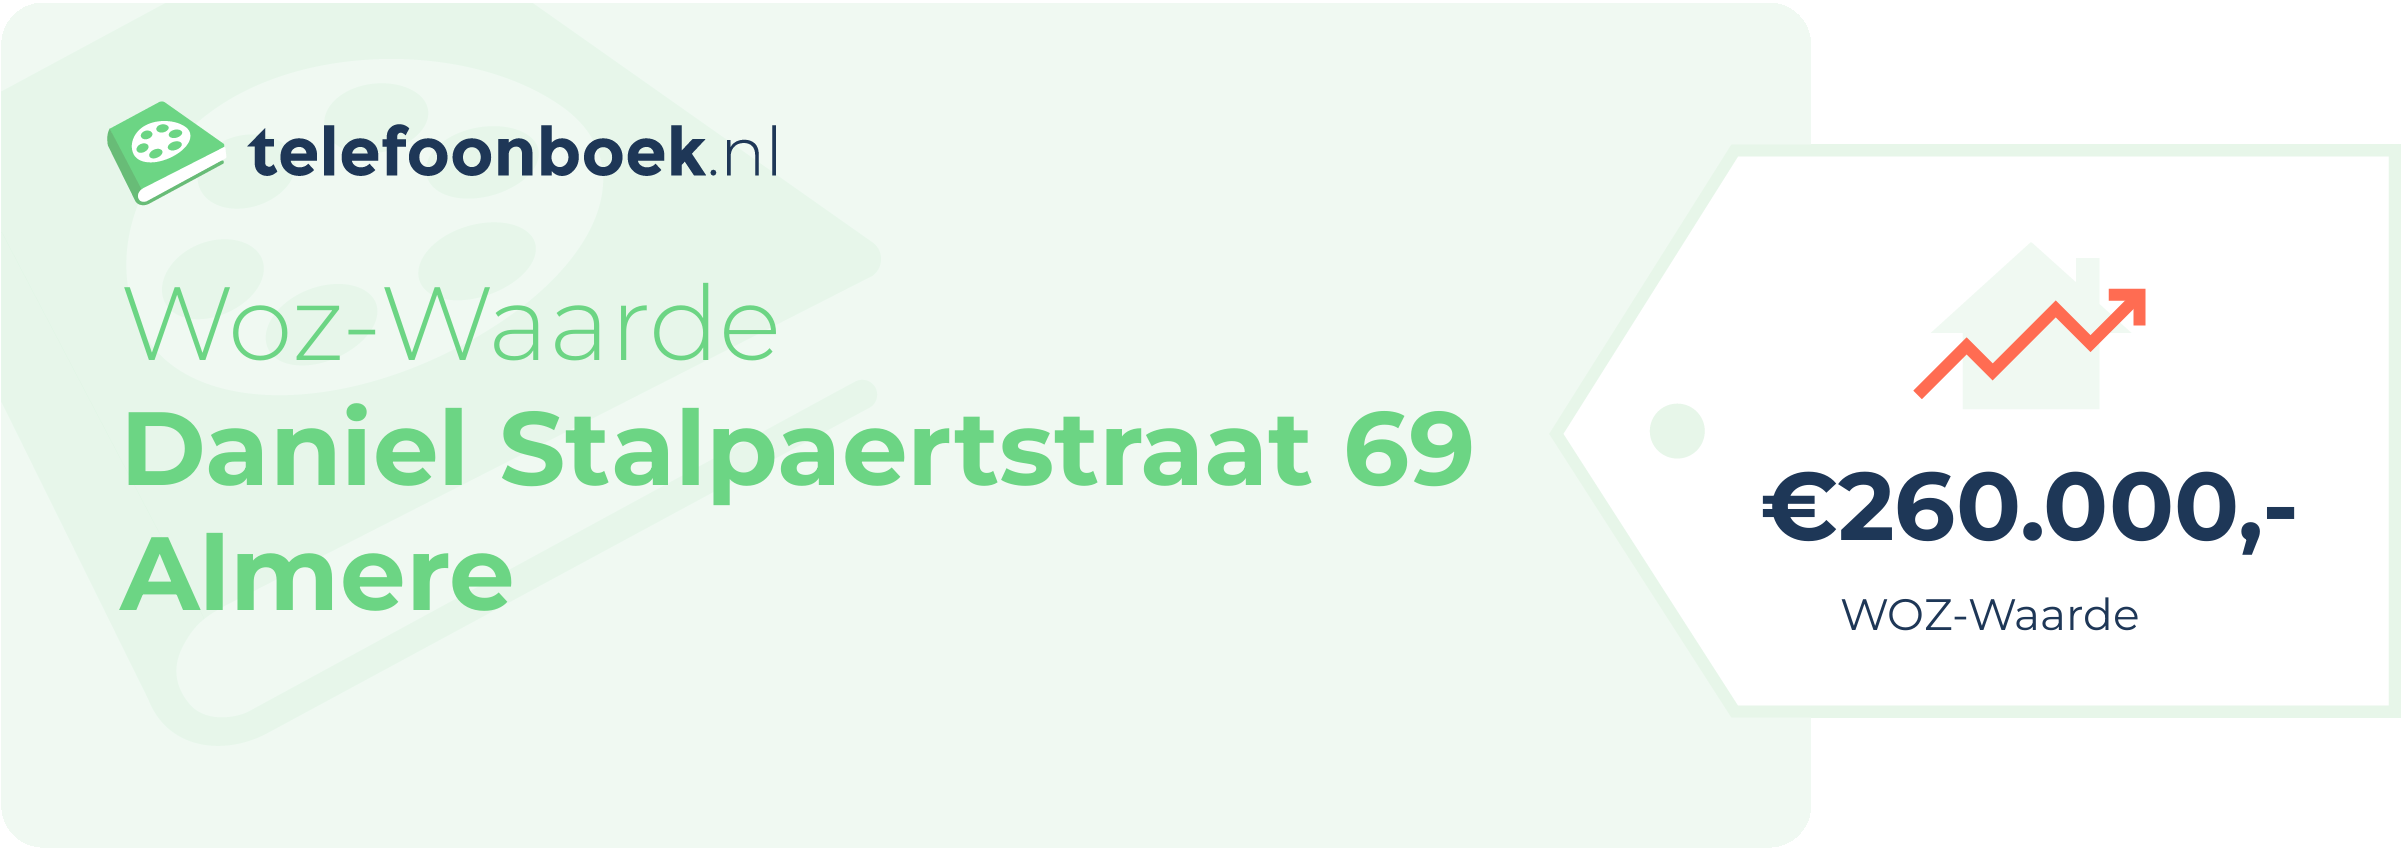 WOZ-waarde Daniel Stalpaertstraat 69 Almere